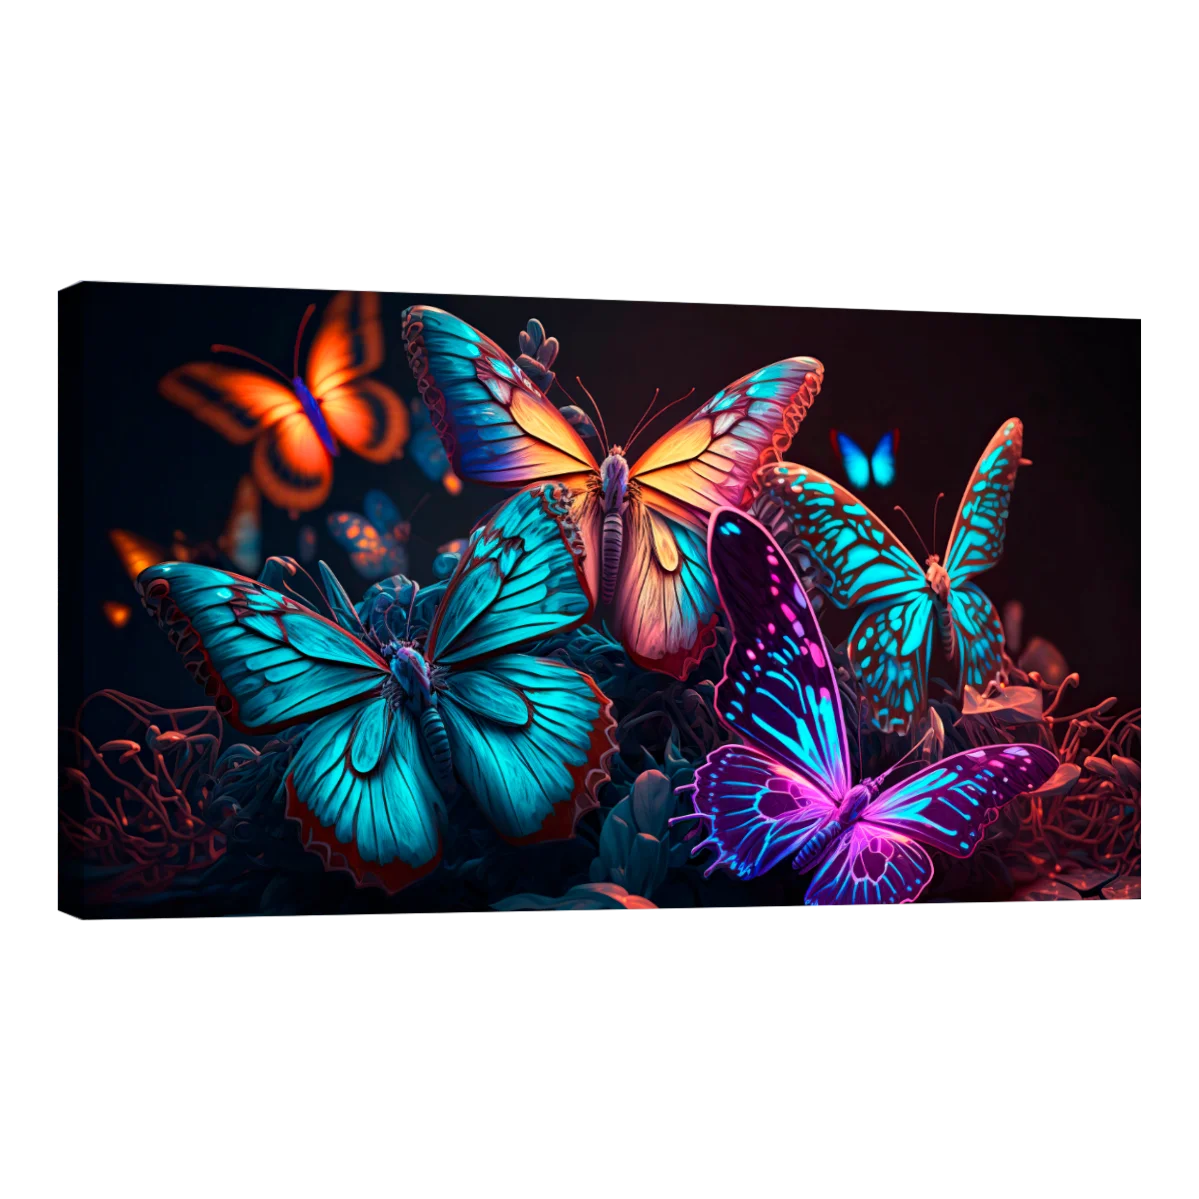 Mariposas Neon